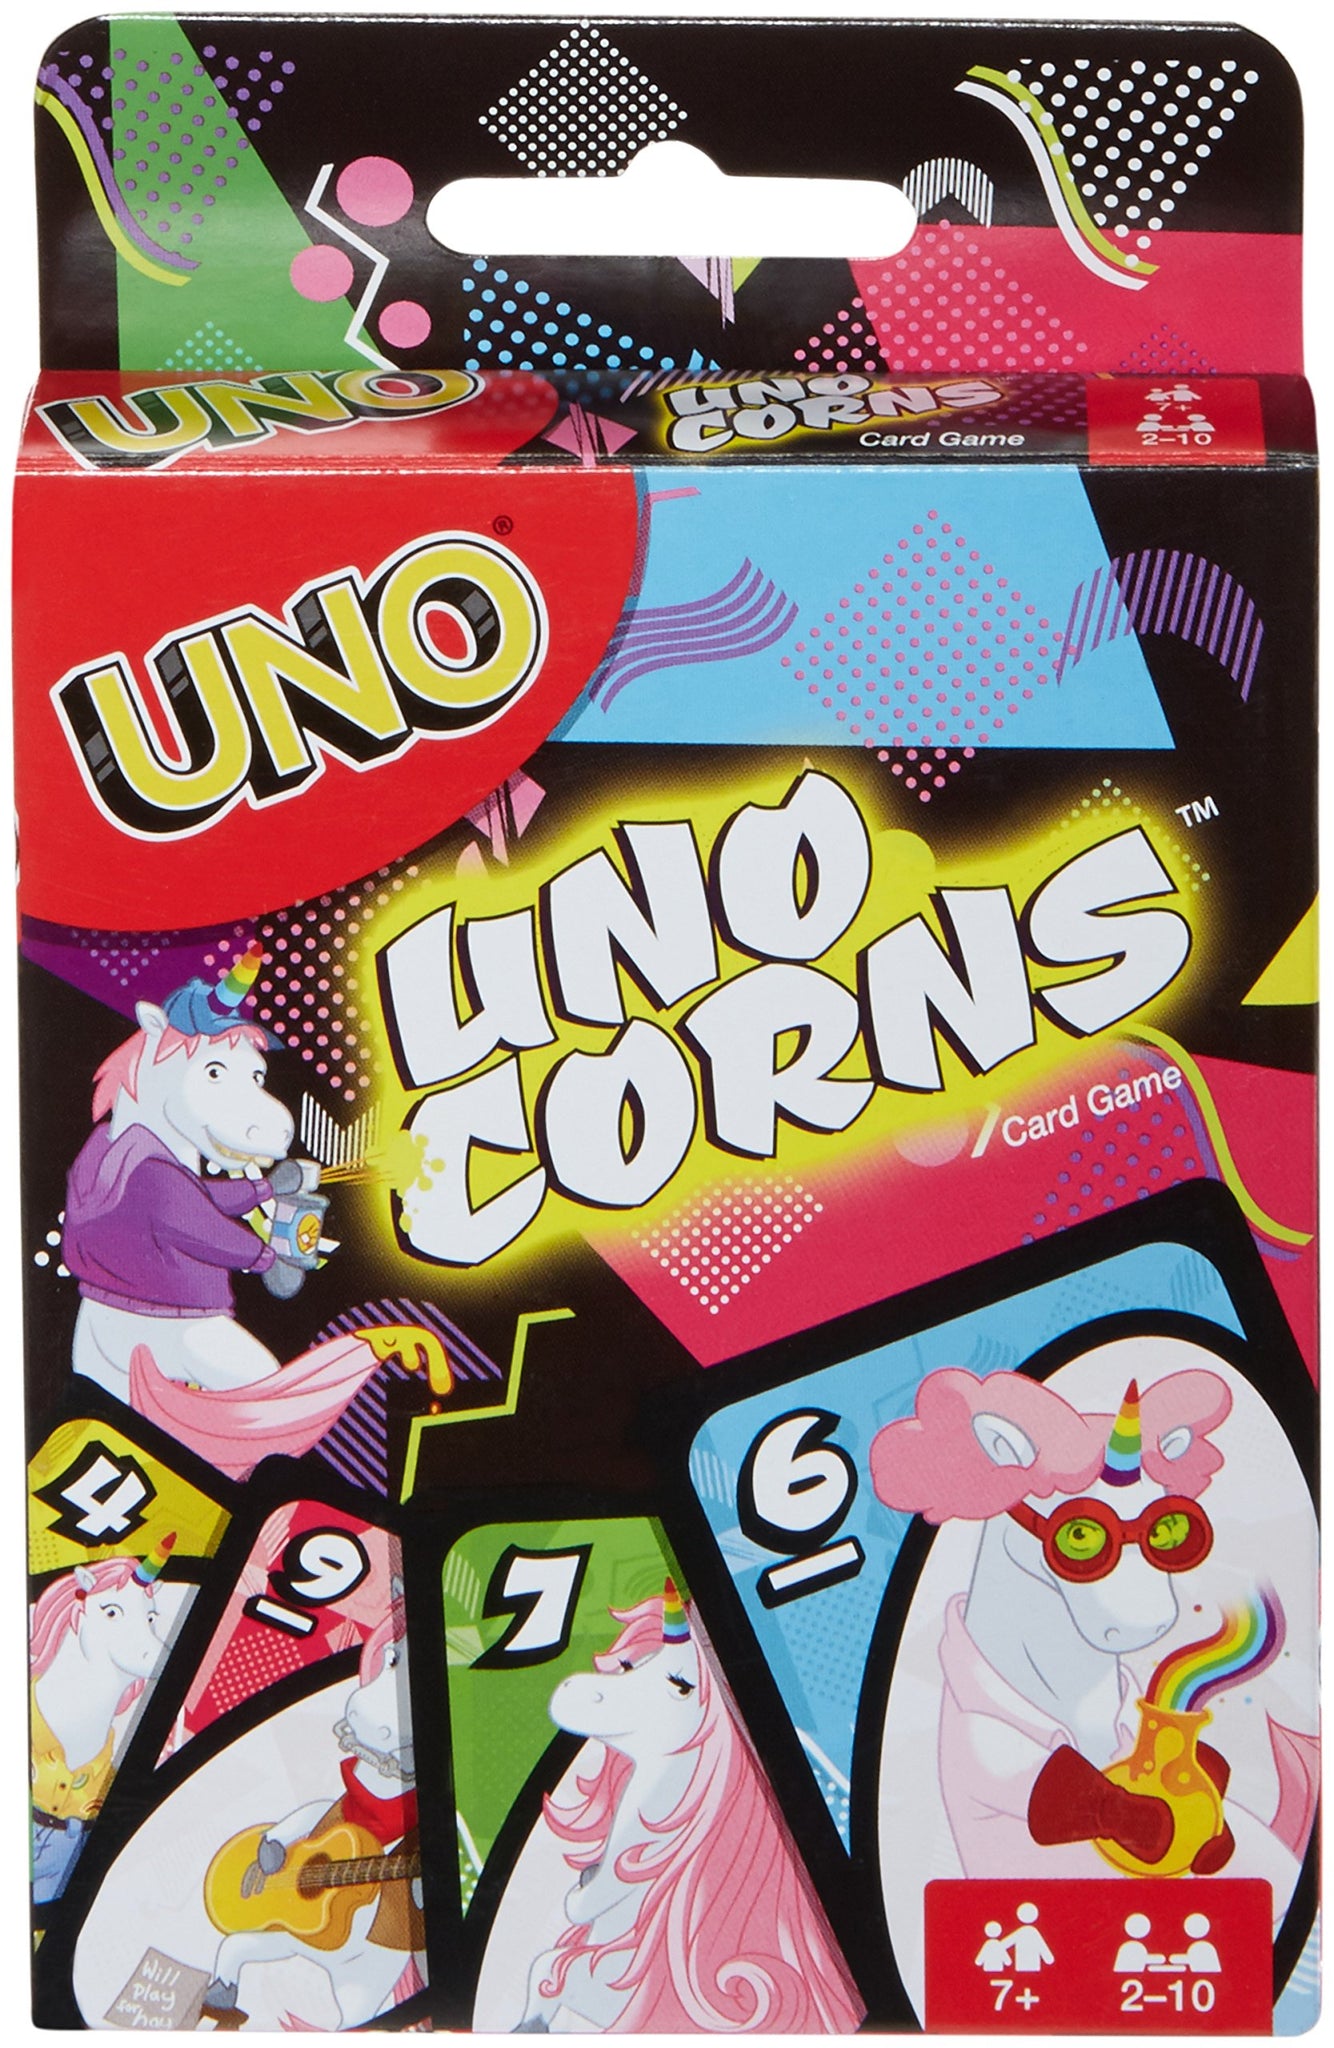 Uno corns unicorns card game